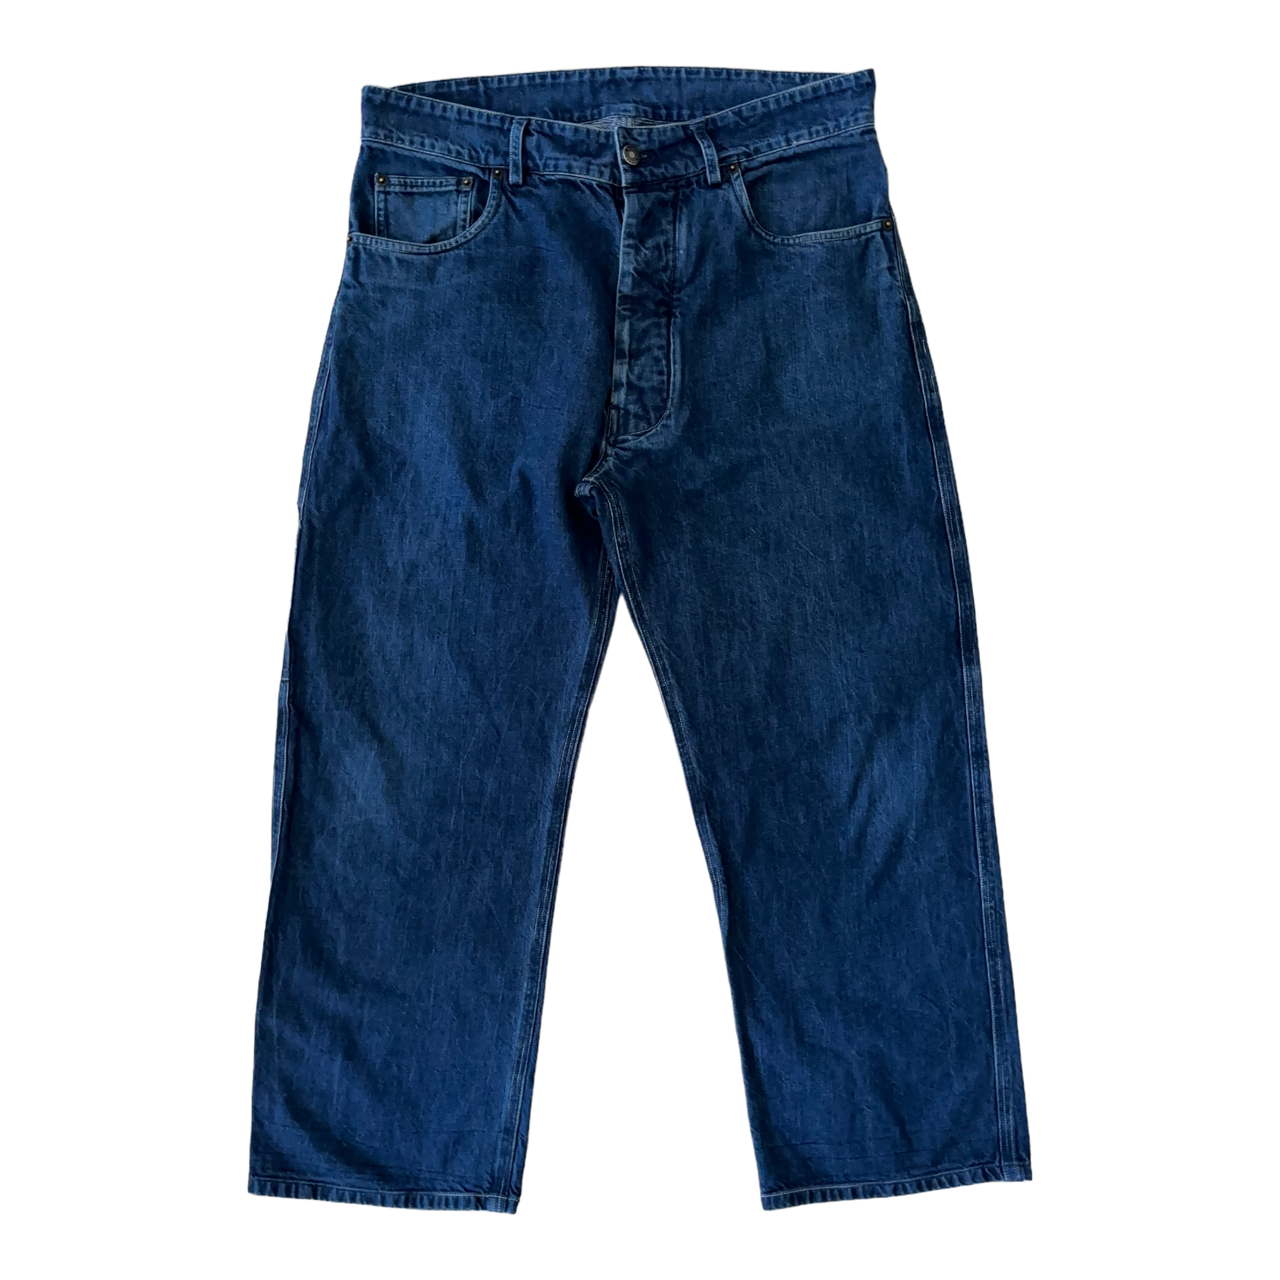 Missoni, Carpenter Jeans (34 x 26)